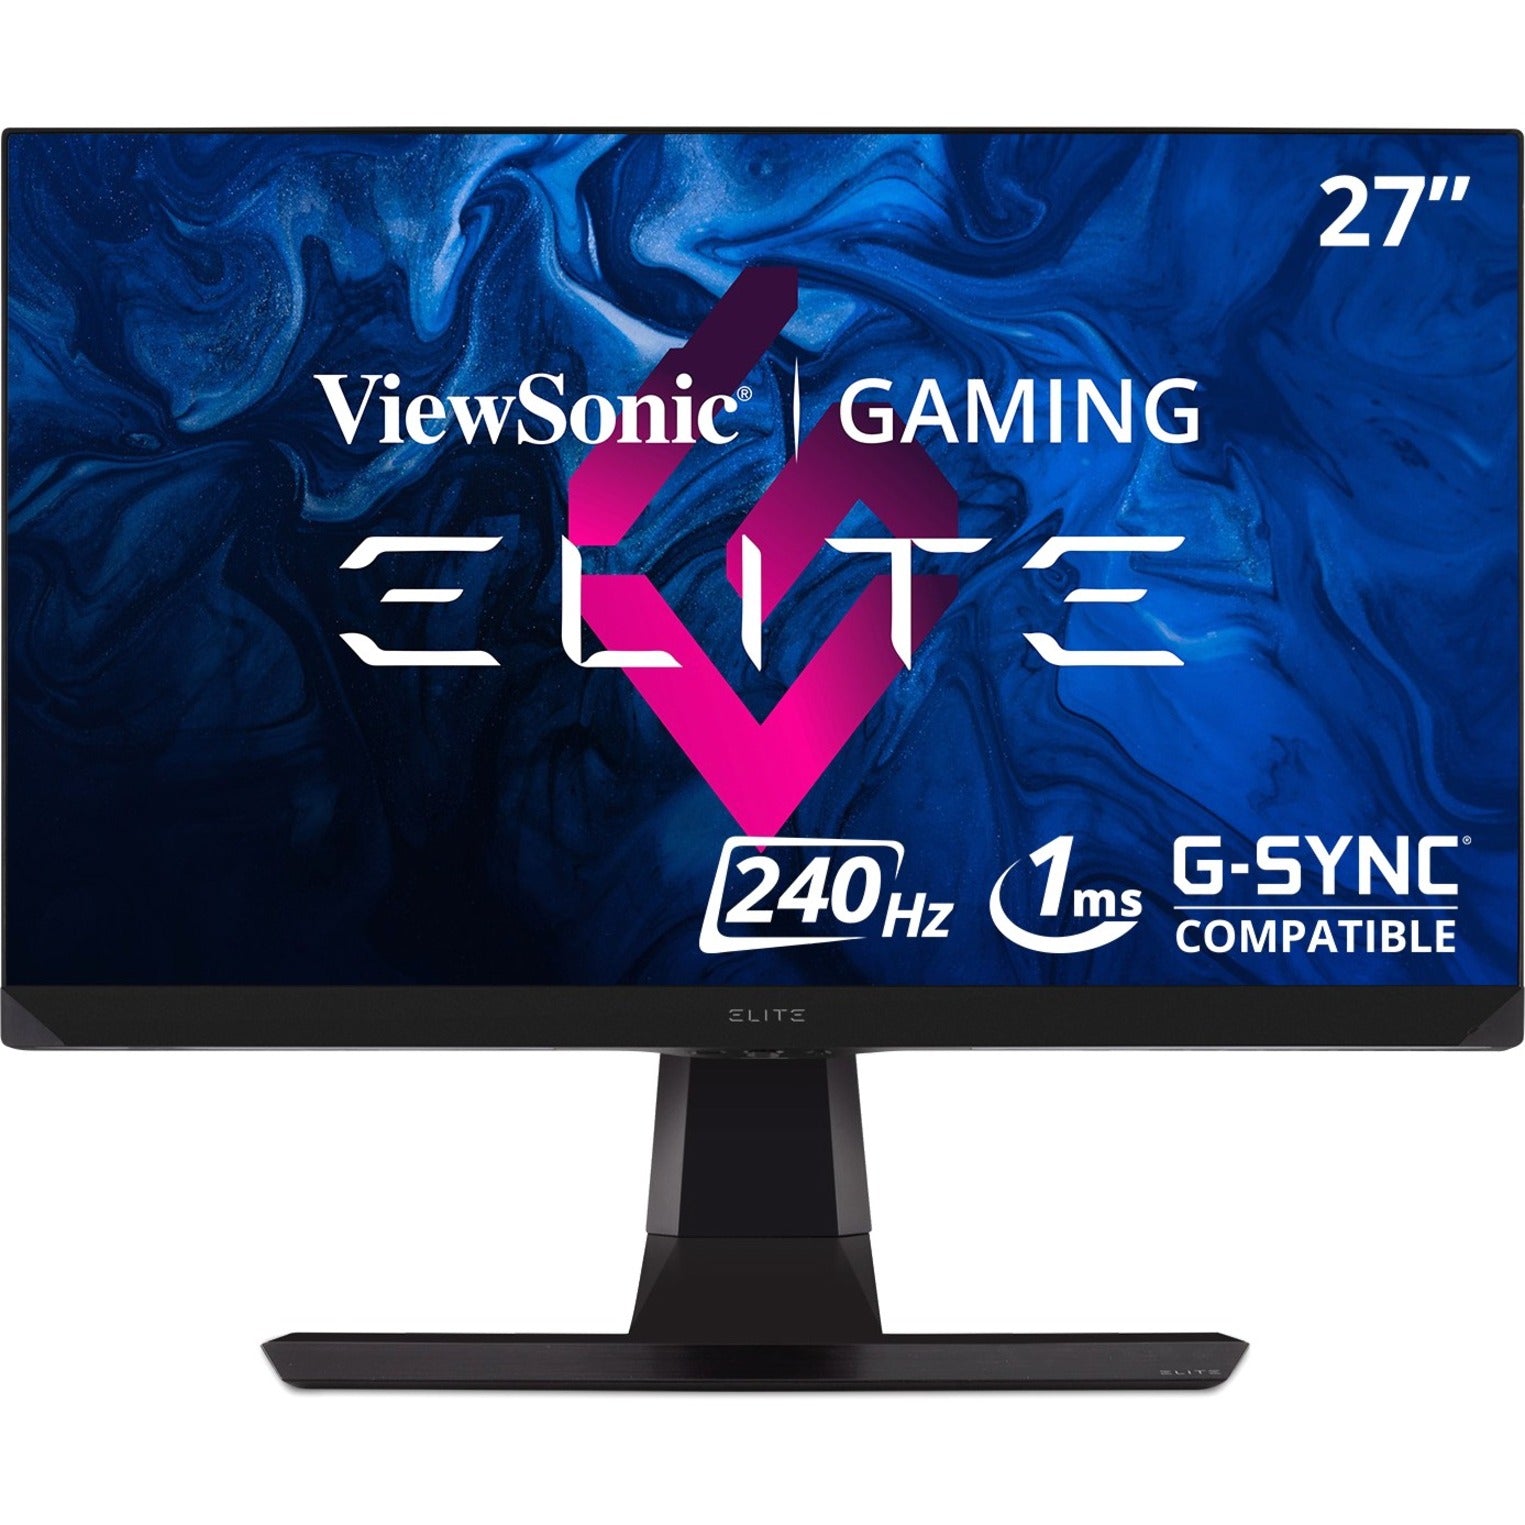 ViewSonic XG270 Elite 27" Gaming Monitor, 165Hz G-Sync QHD, IPS Panel, 1ms Response Time, 99% sRGB, 400 Nit Brightness